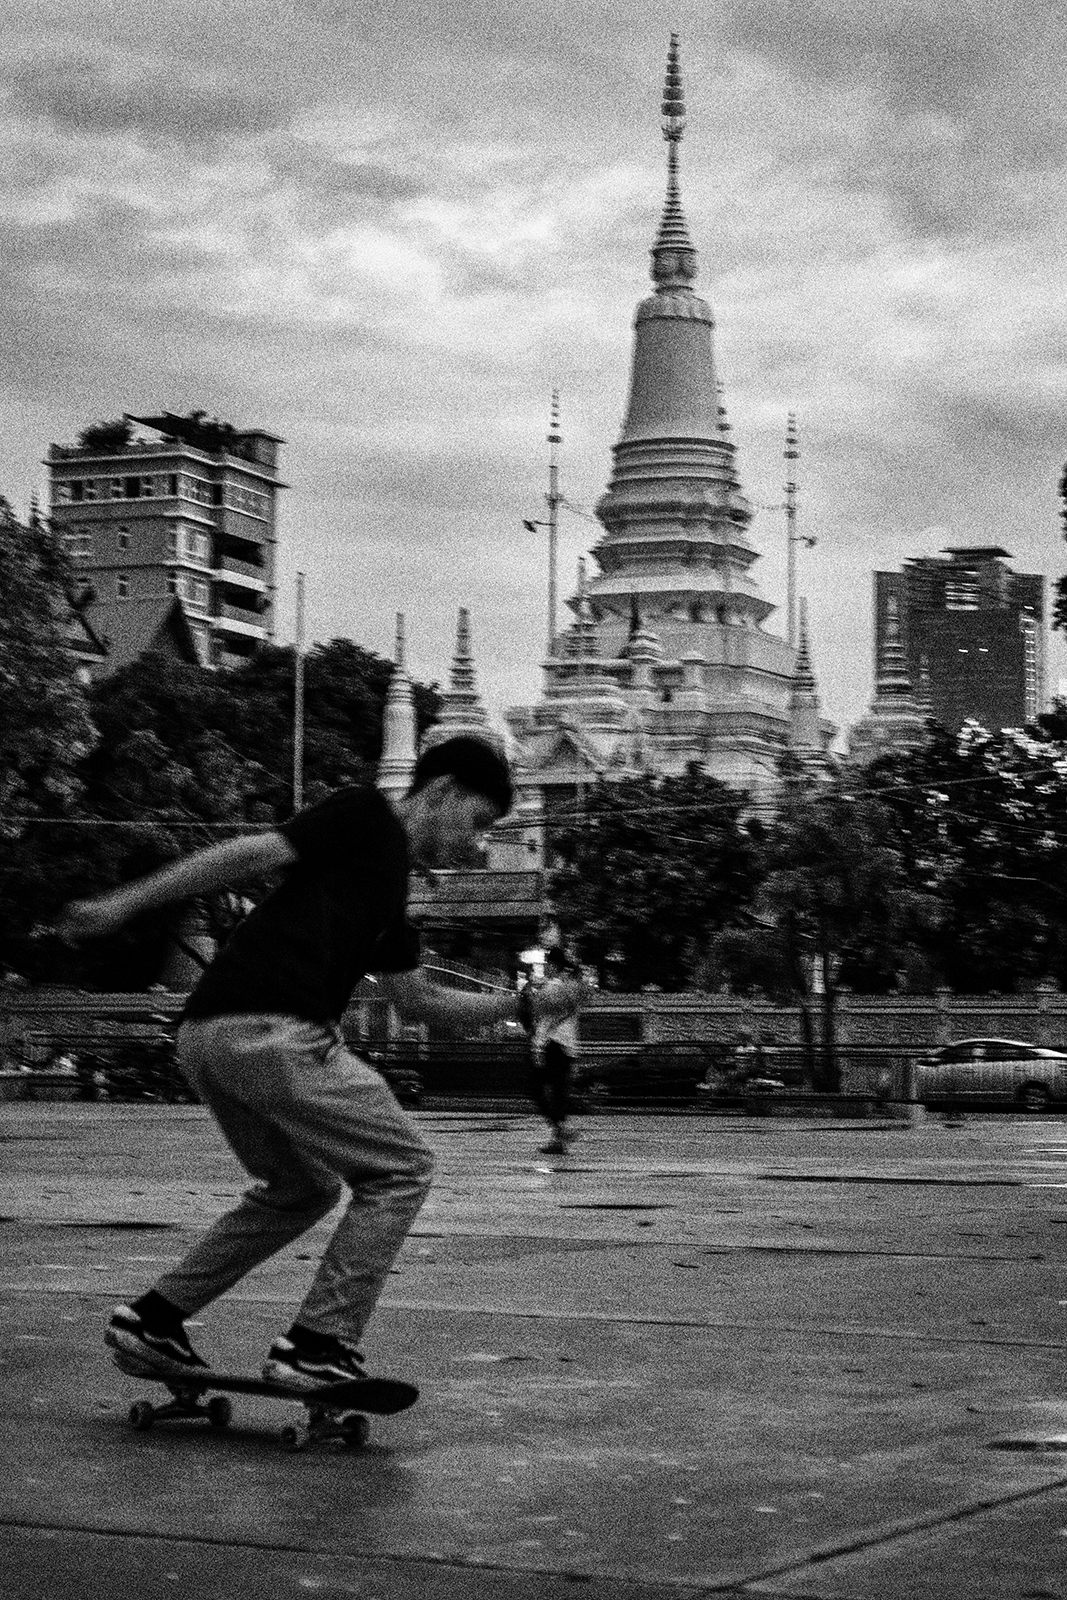 Phnom Penh's skater...